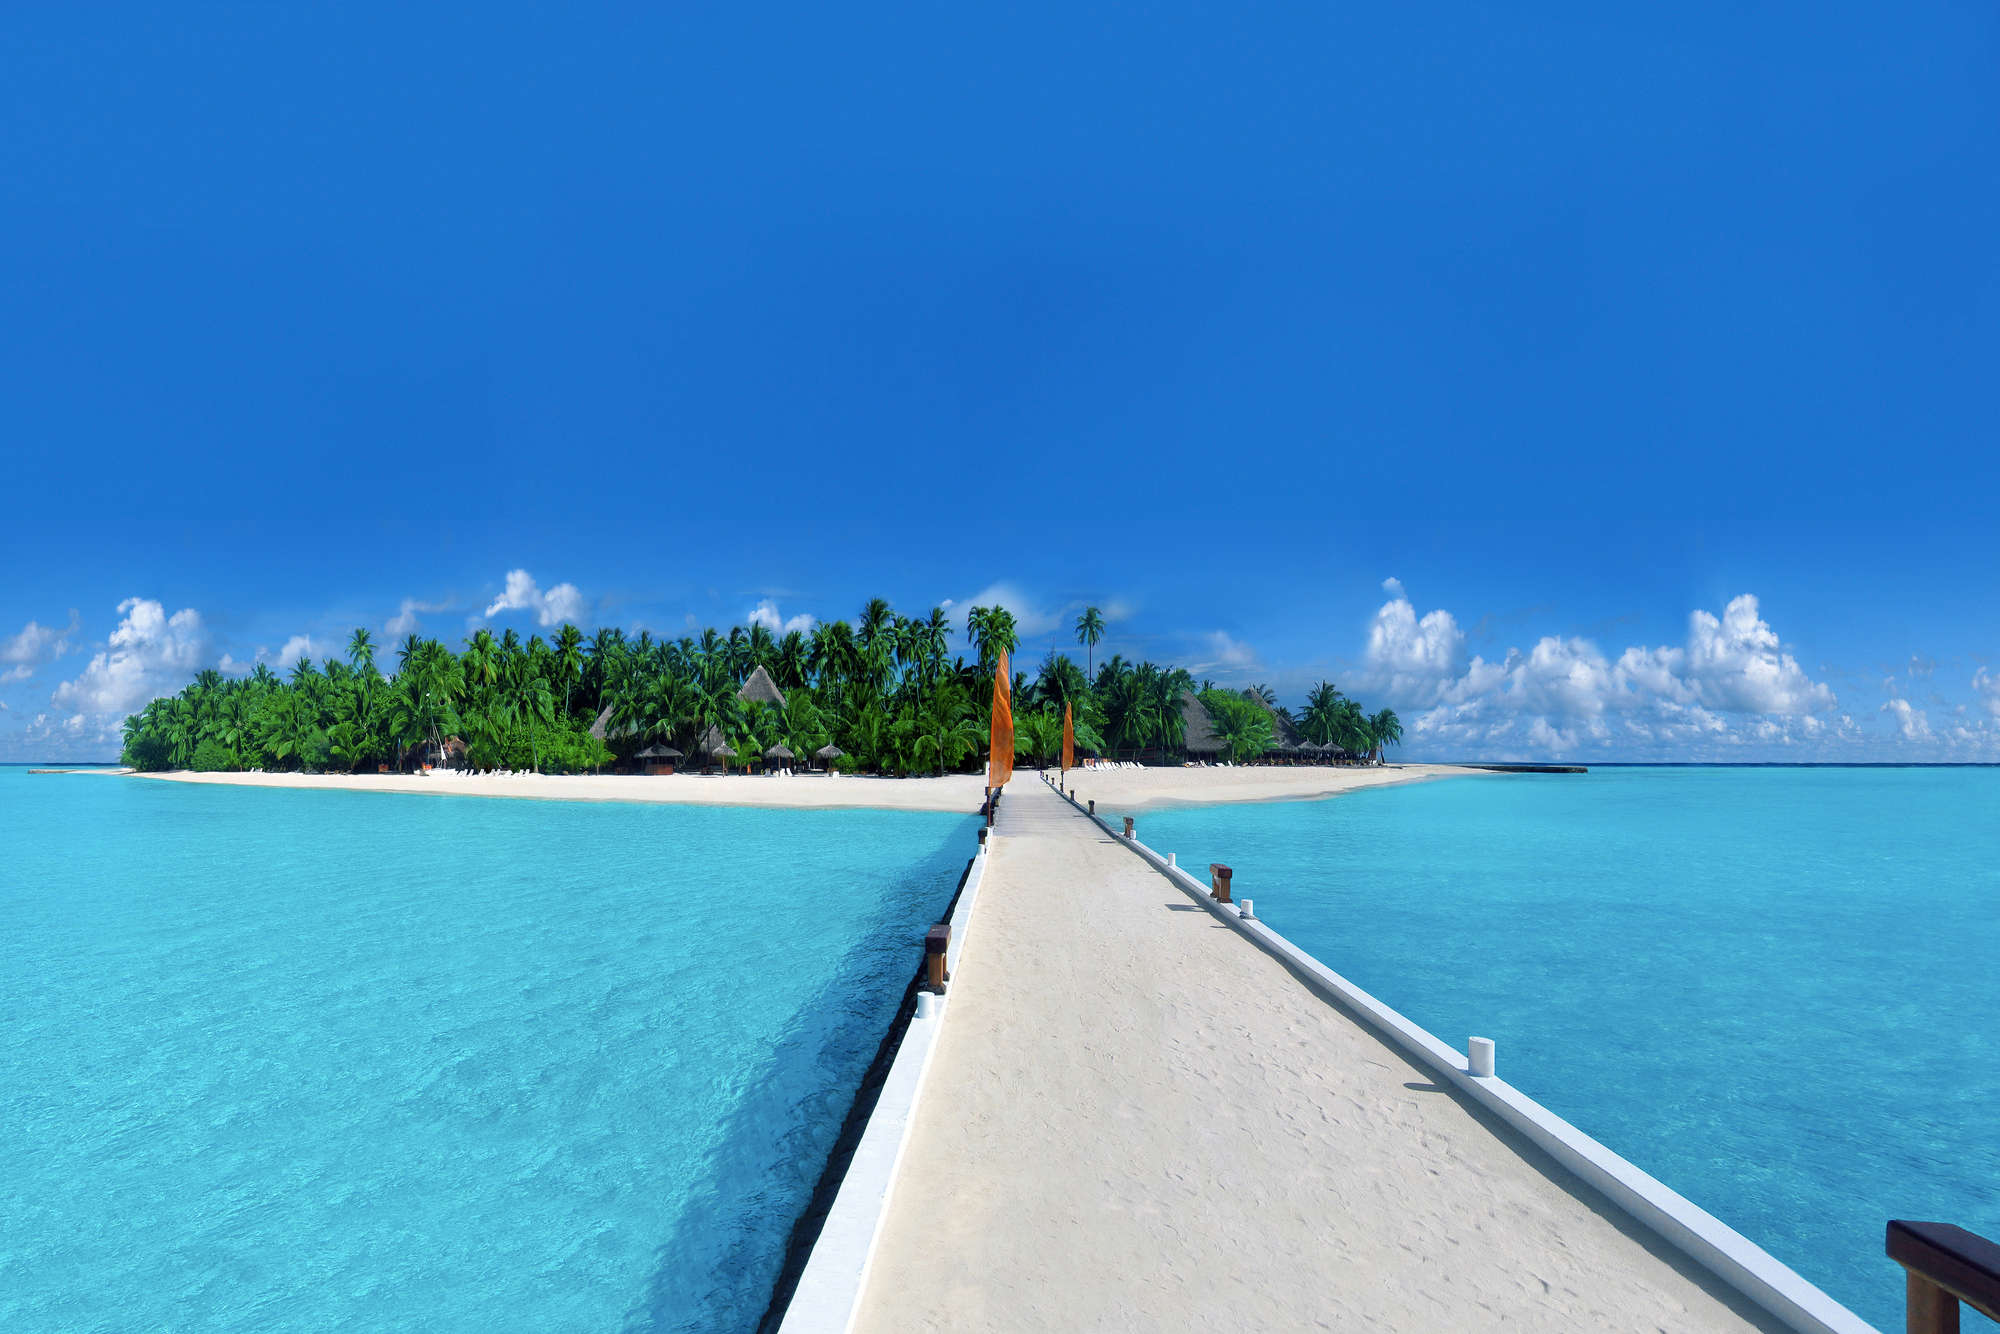             Papier peint panoramique île pont à île avec palmiers sur intissé lisse premium
        